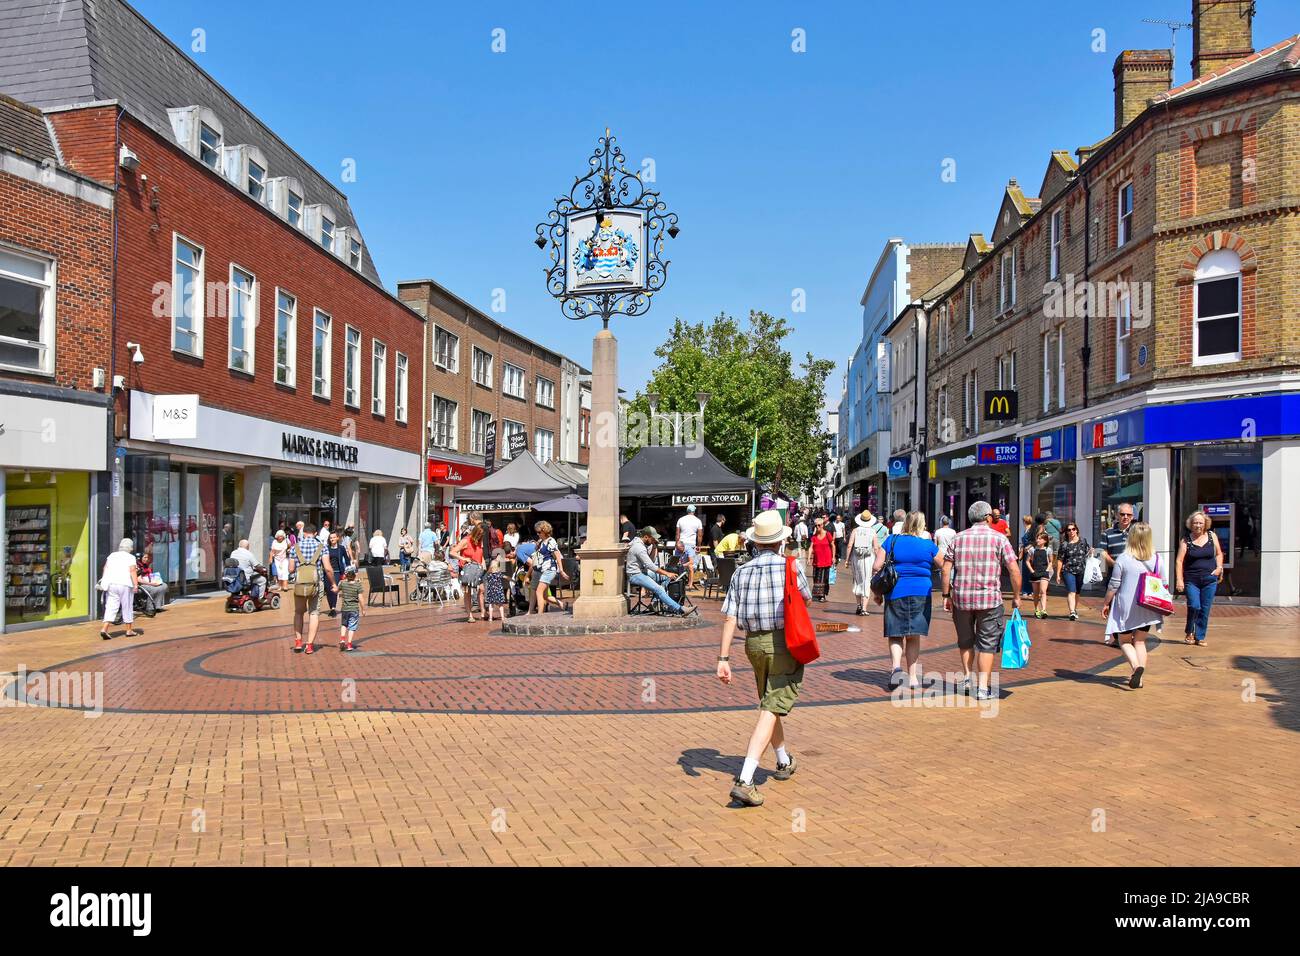 Ciudad de Chelmsford Essex condado de la ciudad con escudo de armas azul cielo día de verano para los compradores de personas en pavimentado ocupado peatonal calle alta Inglaterra Reino Unido Foto de stock